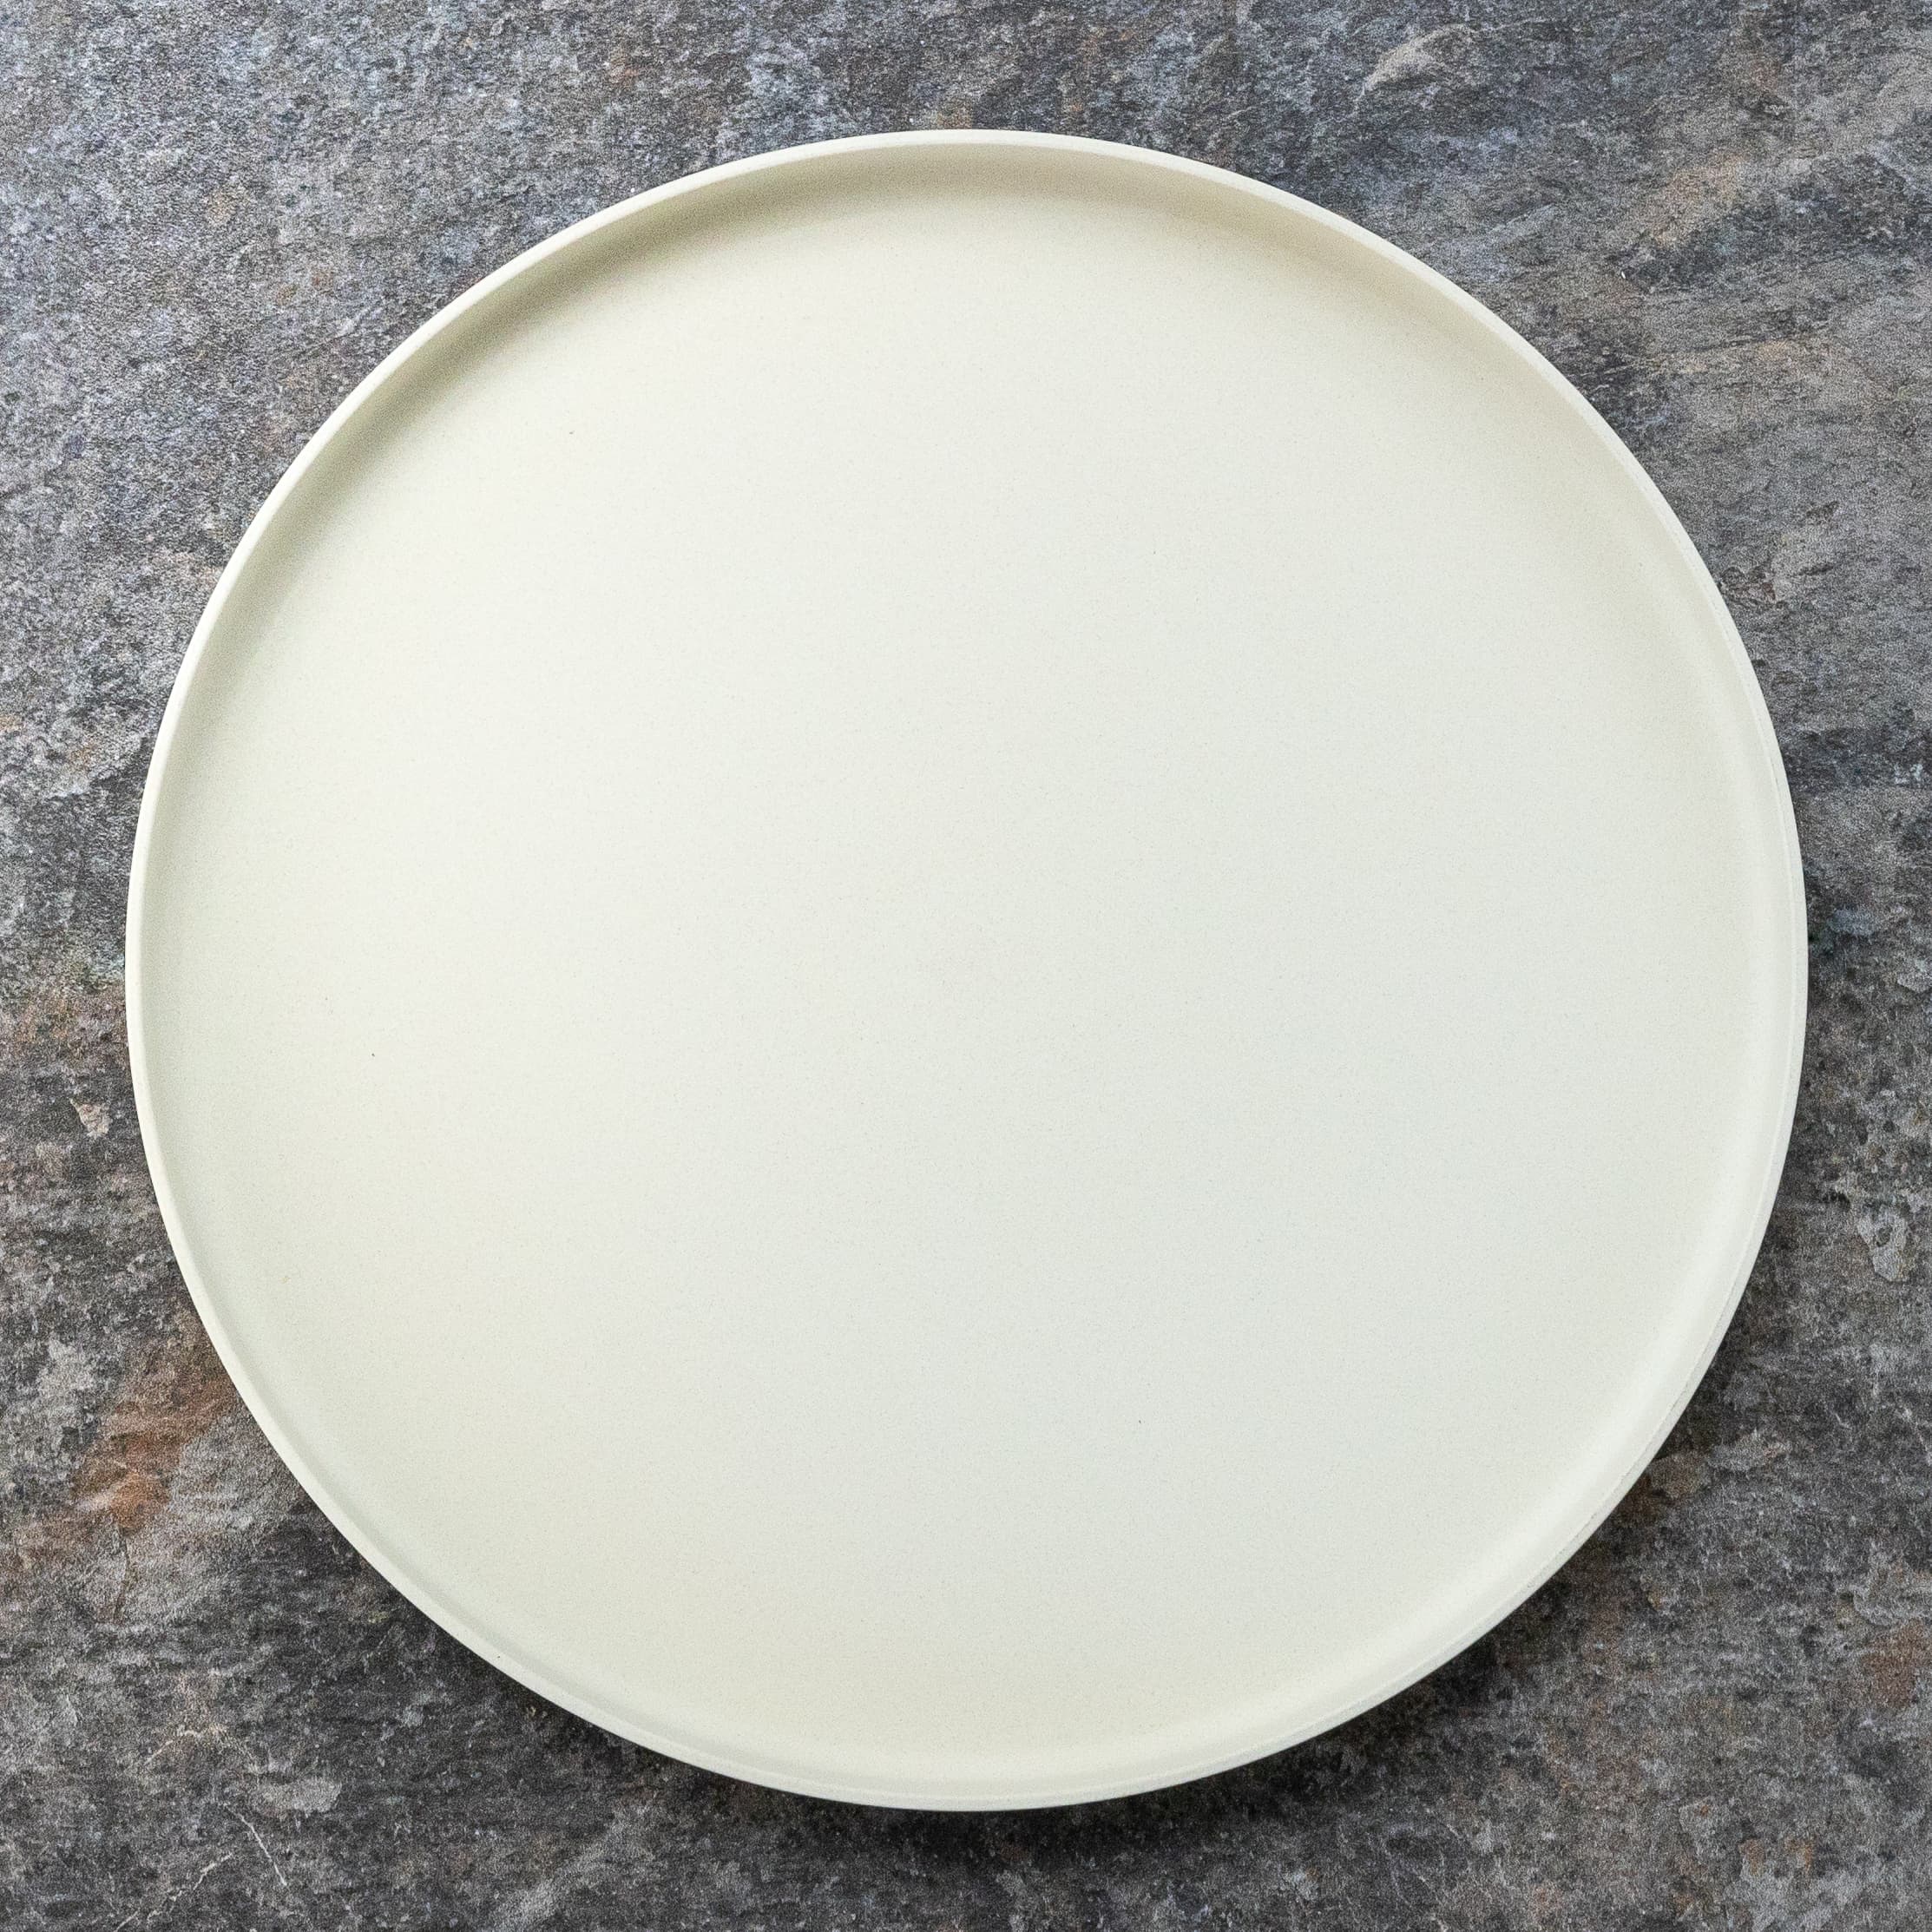 Zungleboo Eco-friendly Dinner Plates